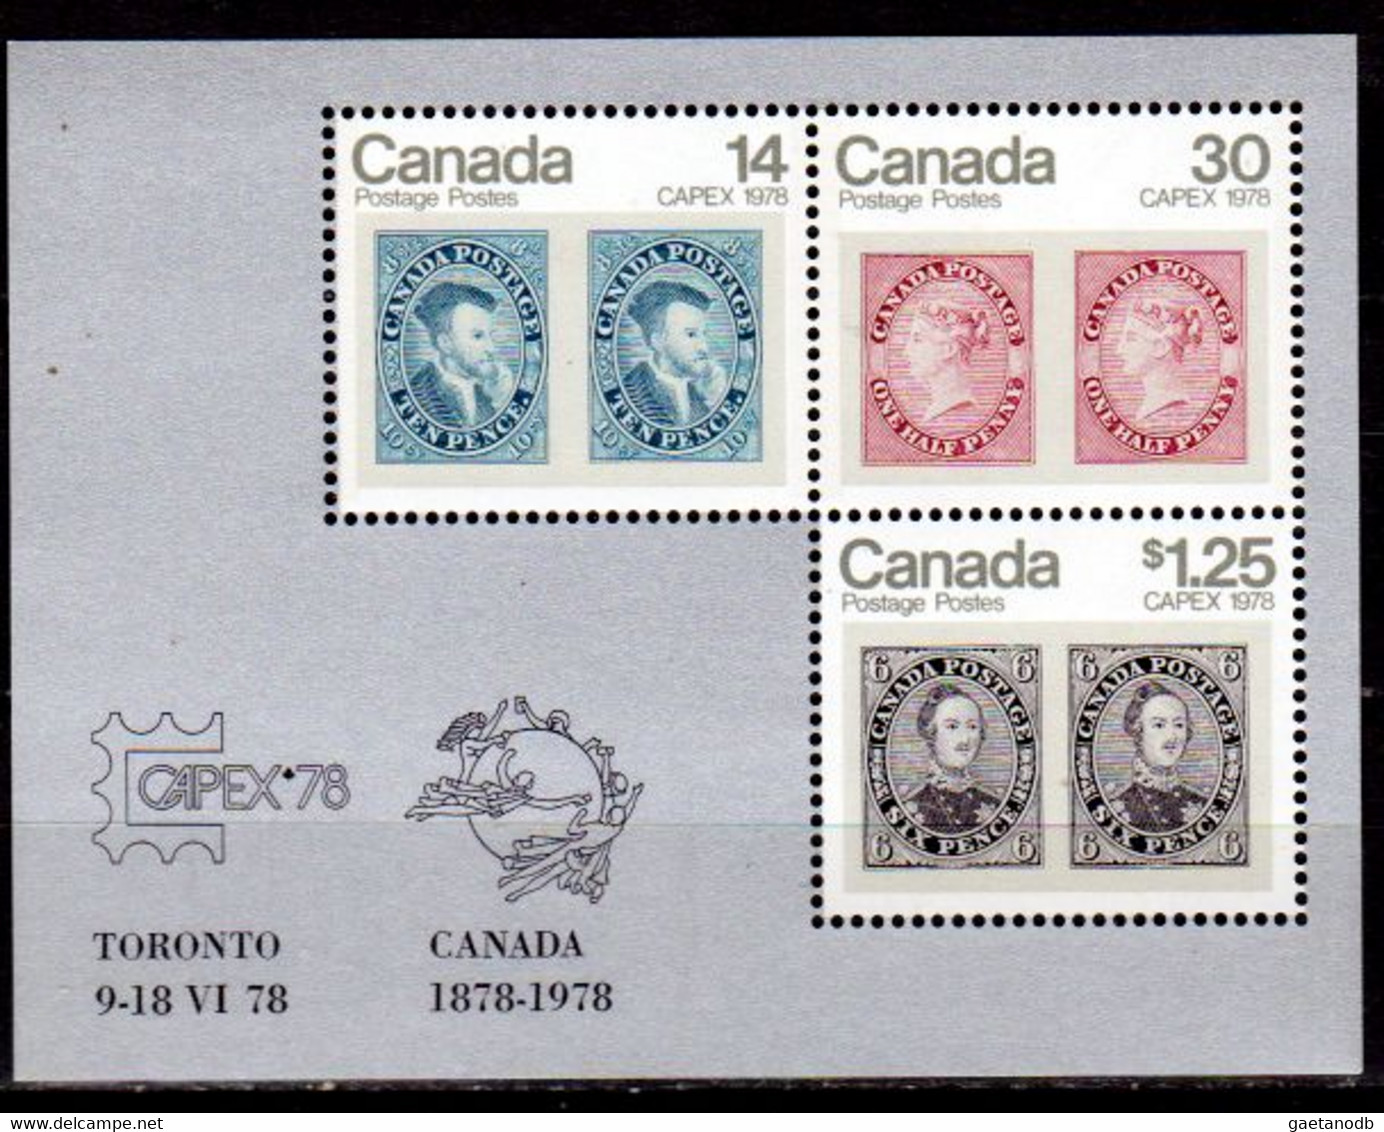 Canada-0065: Emissione 1978 (++) MNH - Qualità A Vostro Giudizio. - Paginas De Cuadernillos